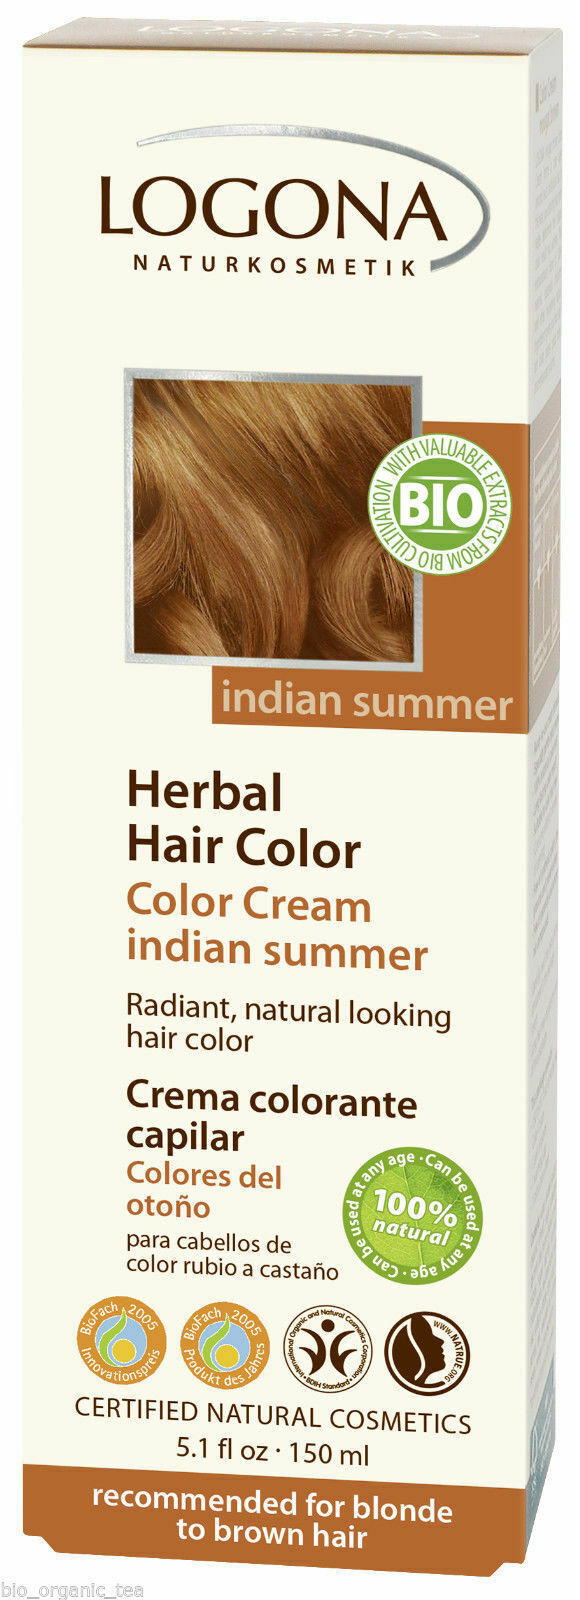 Logona Herbal Hair Color Chart